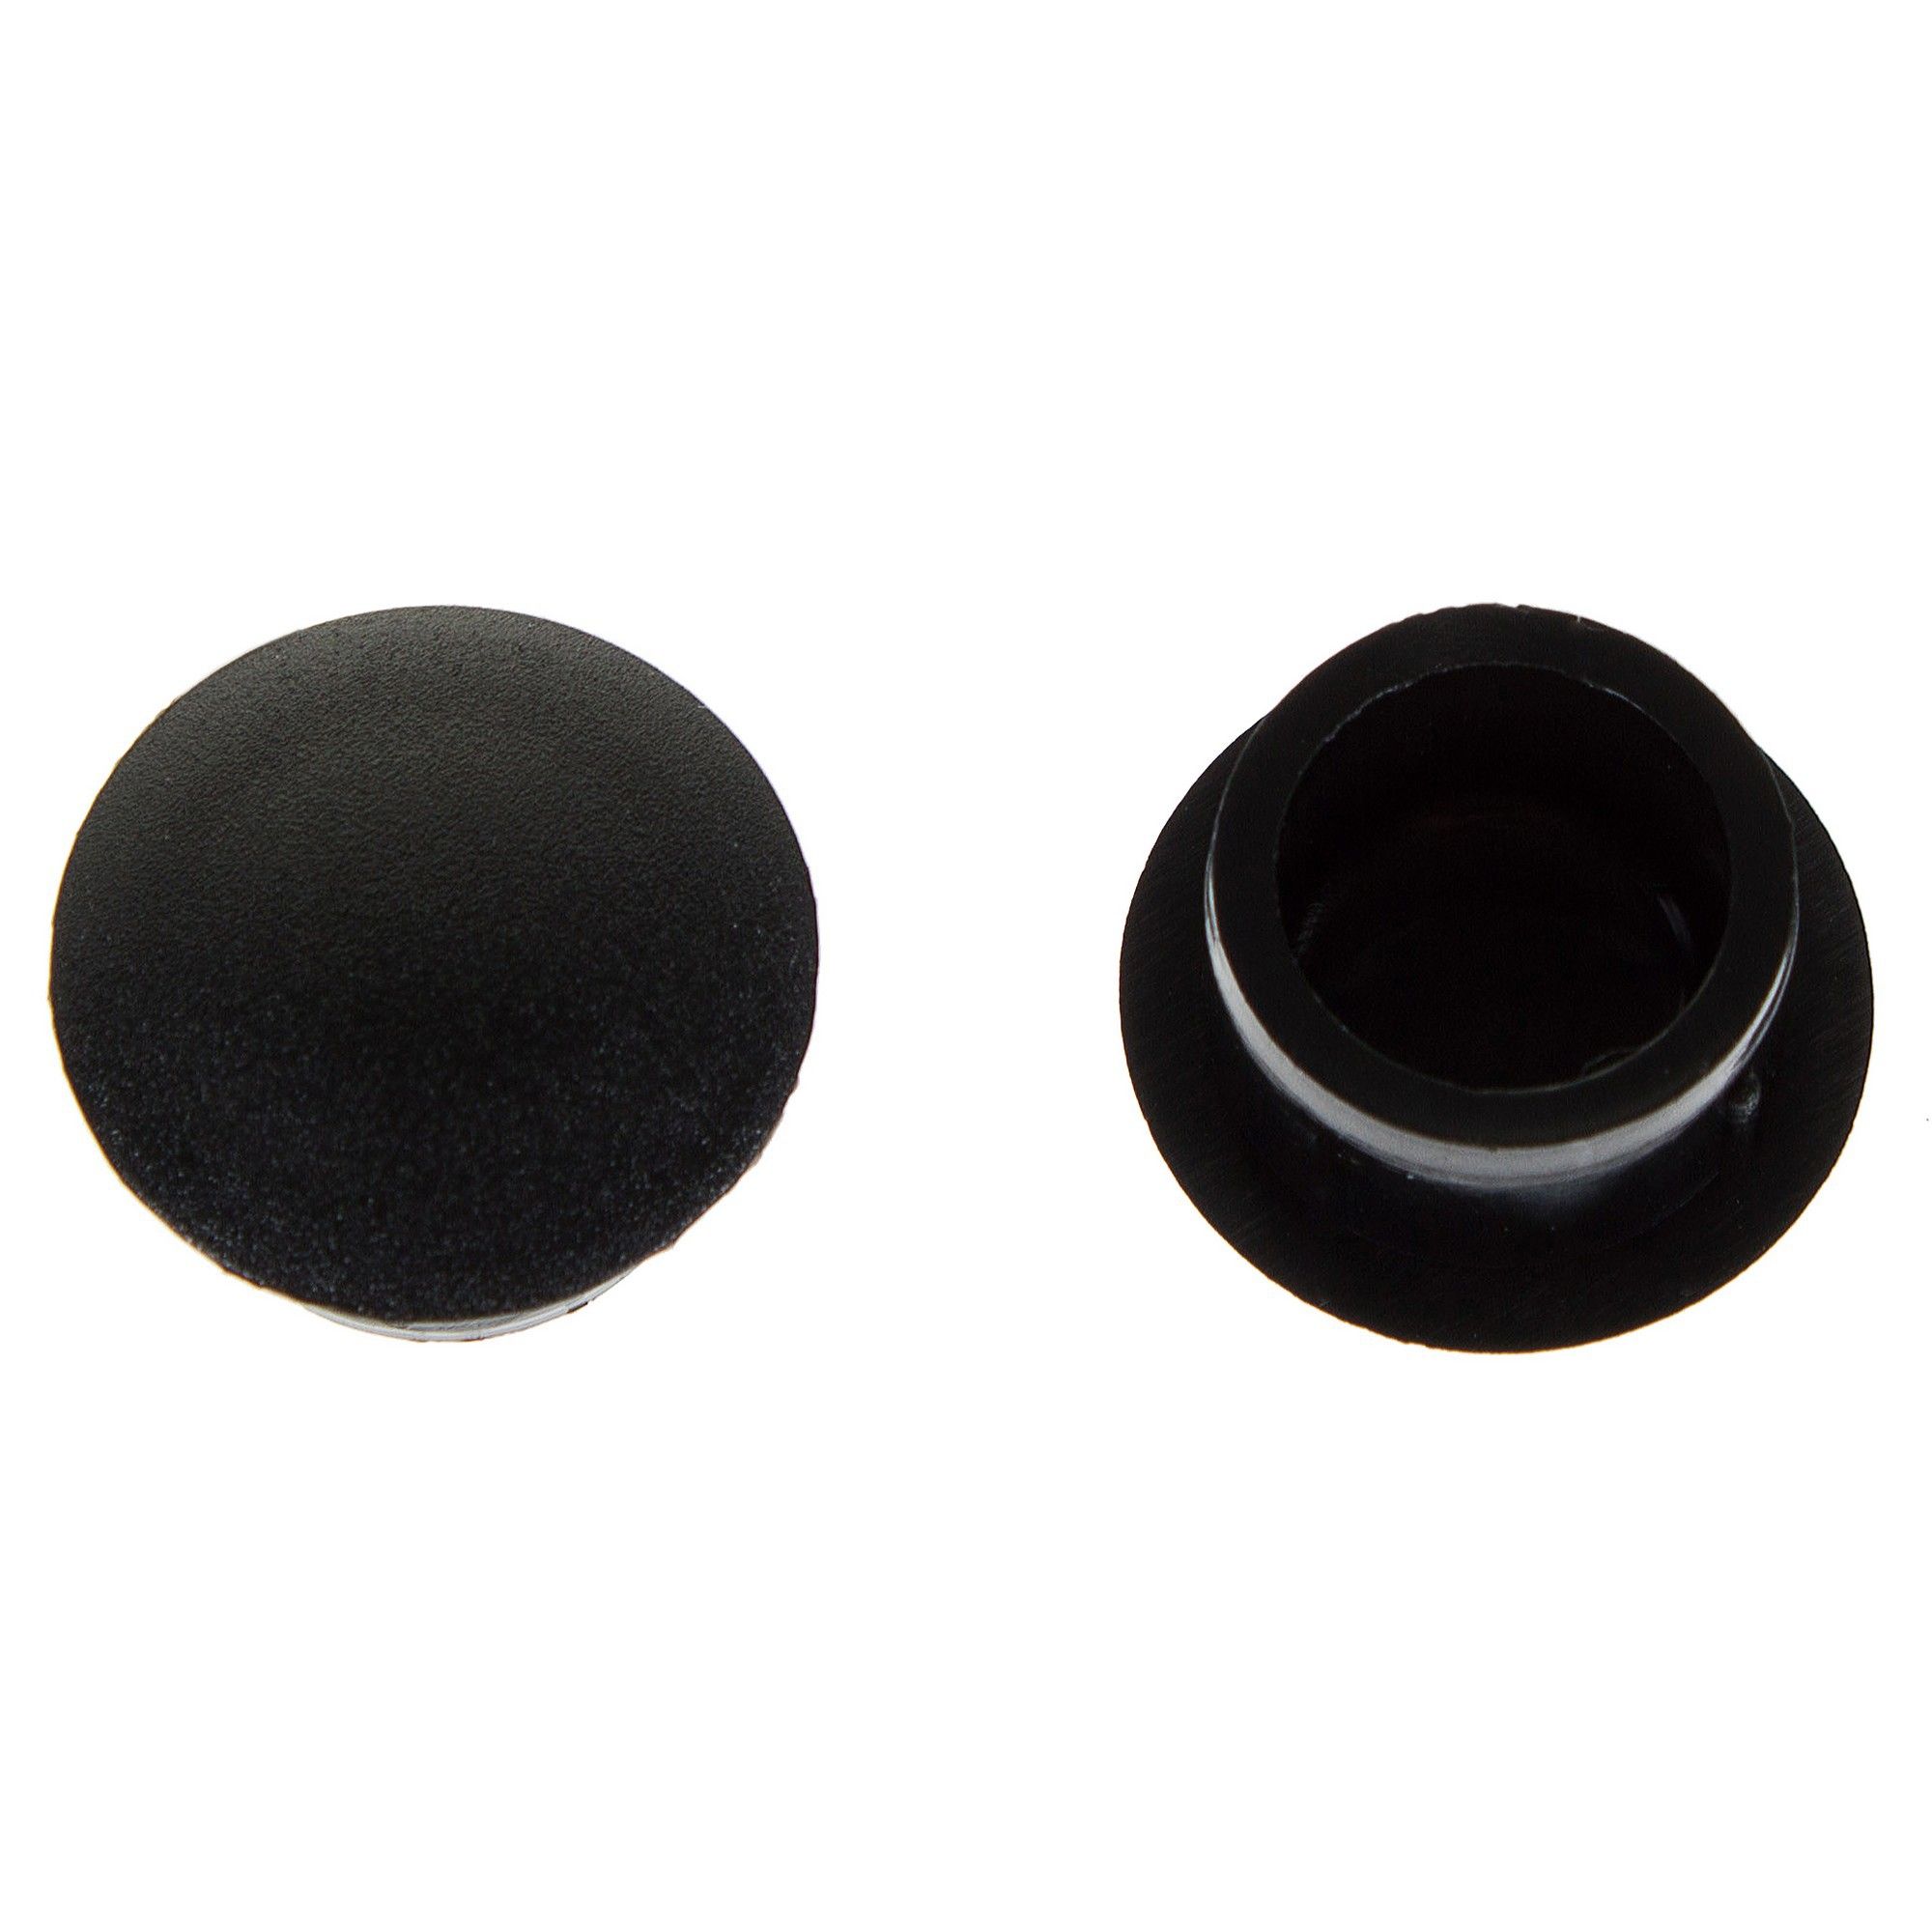 Купить заглушку для отверстий. Заглушка 20мм Мерлен черная. Заглушка пластиковая черная 20 мм. Заглушка 14 мм. Заглушка для дверных коробок 14 мм полиэтилен цвет черный.